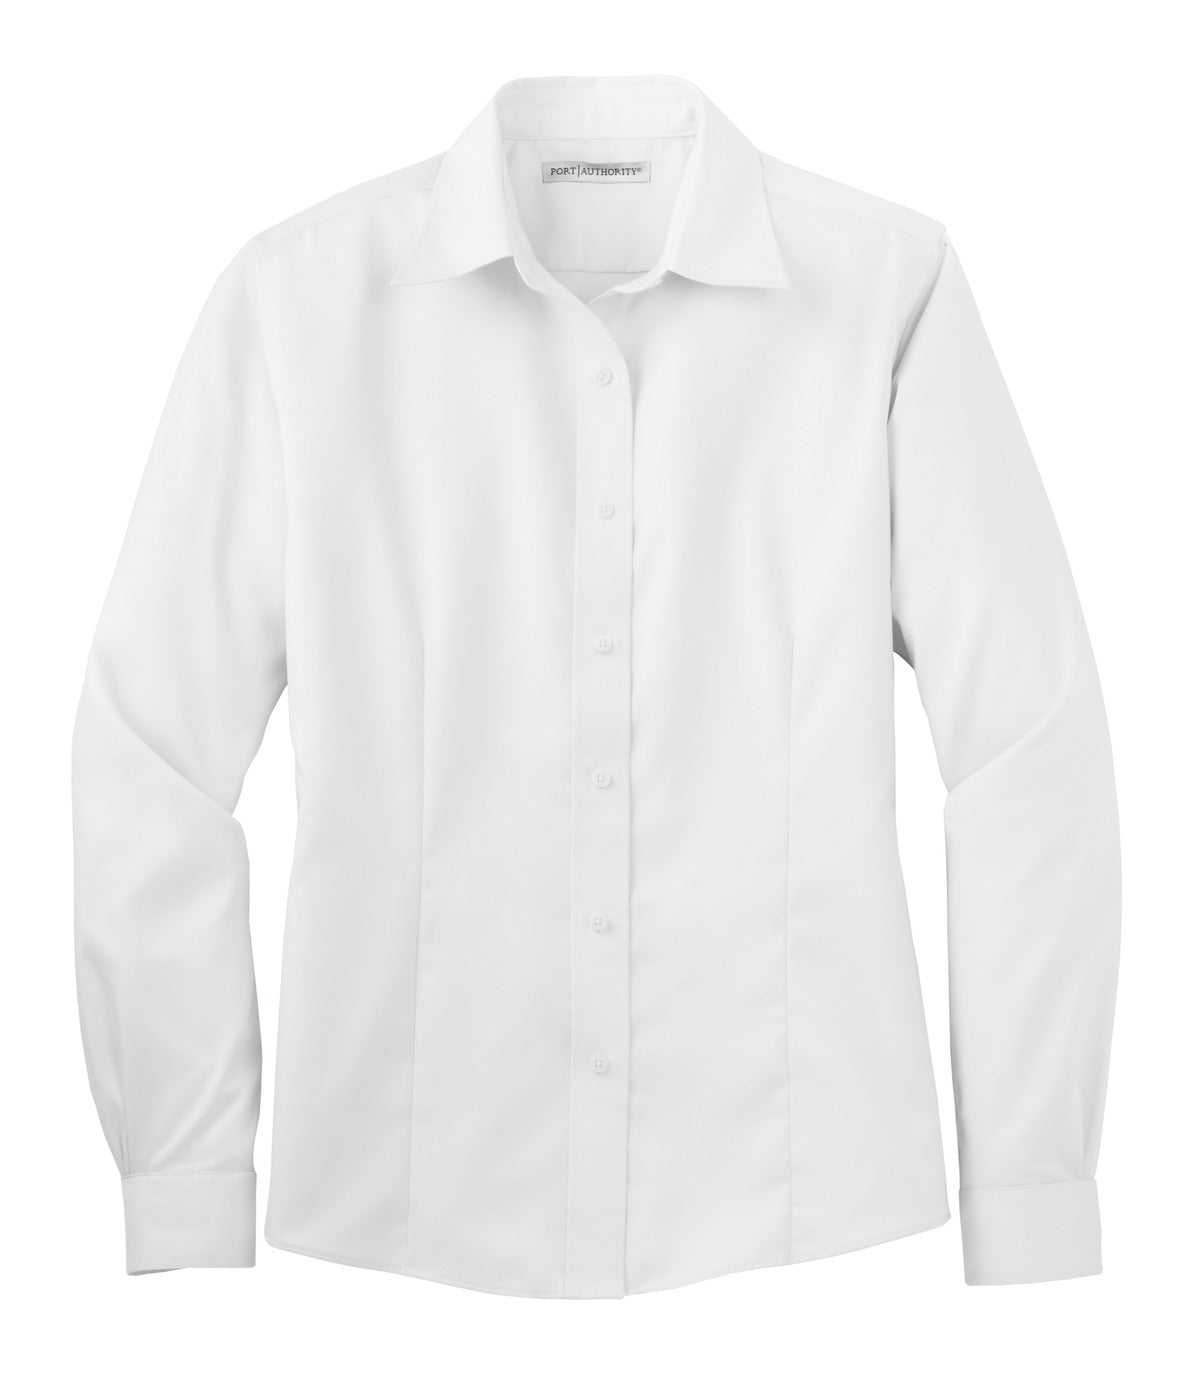 Port Authority L638 Ladies Non-Iron Twill Shirt - White - HIT a Double - 5